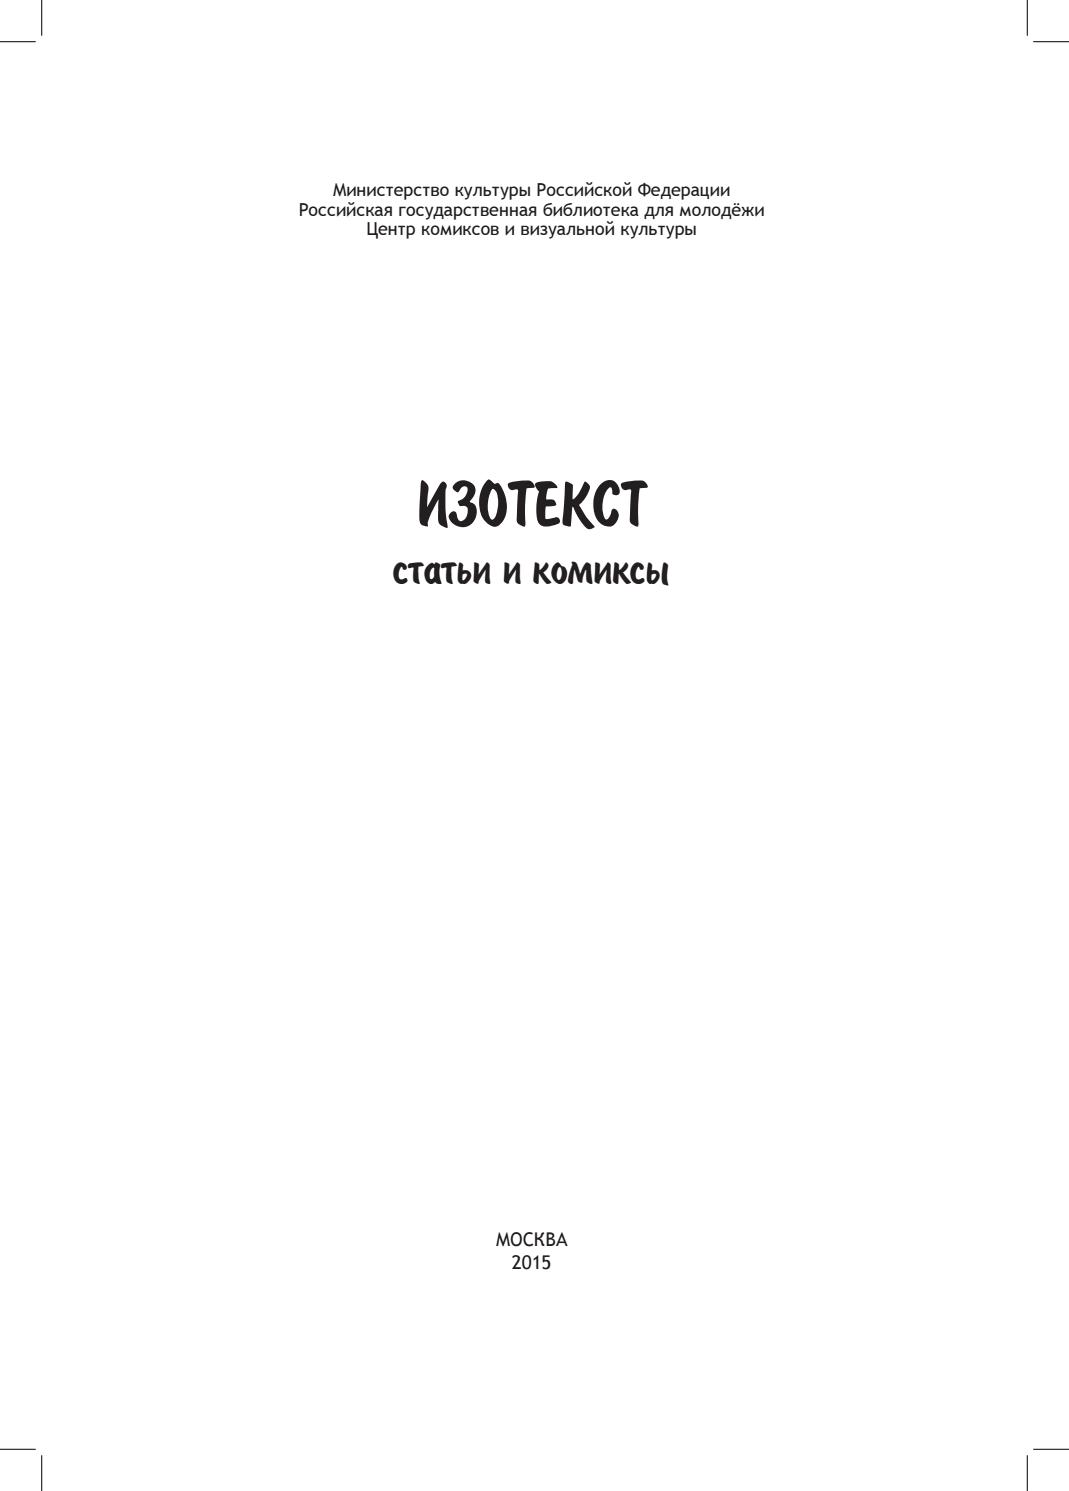 Изотекст. Статьи и комиксы, 2015, А. И. Кунин